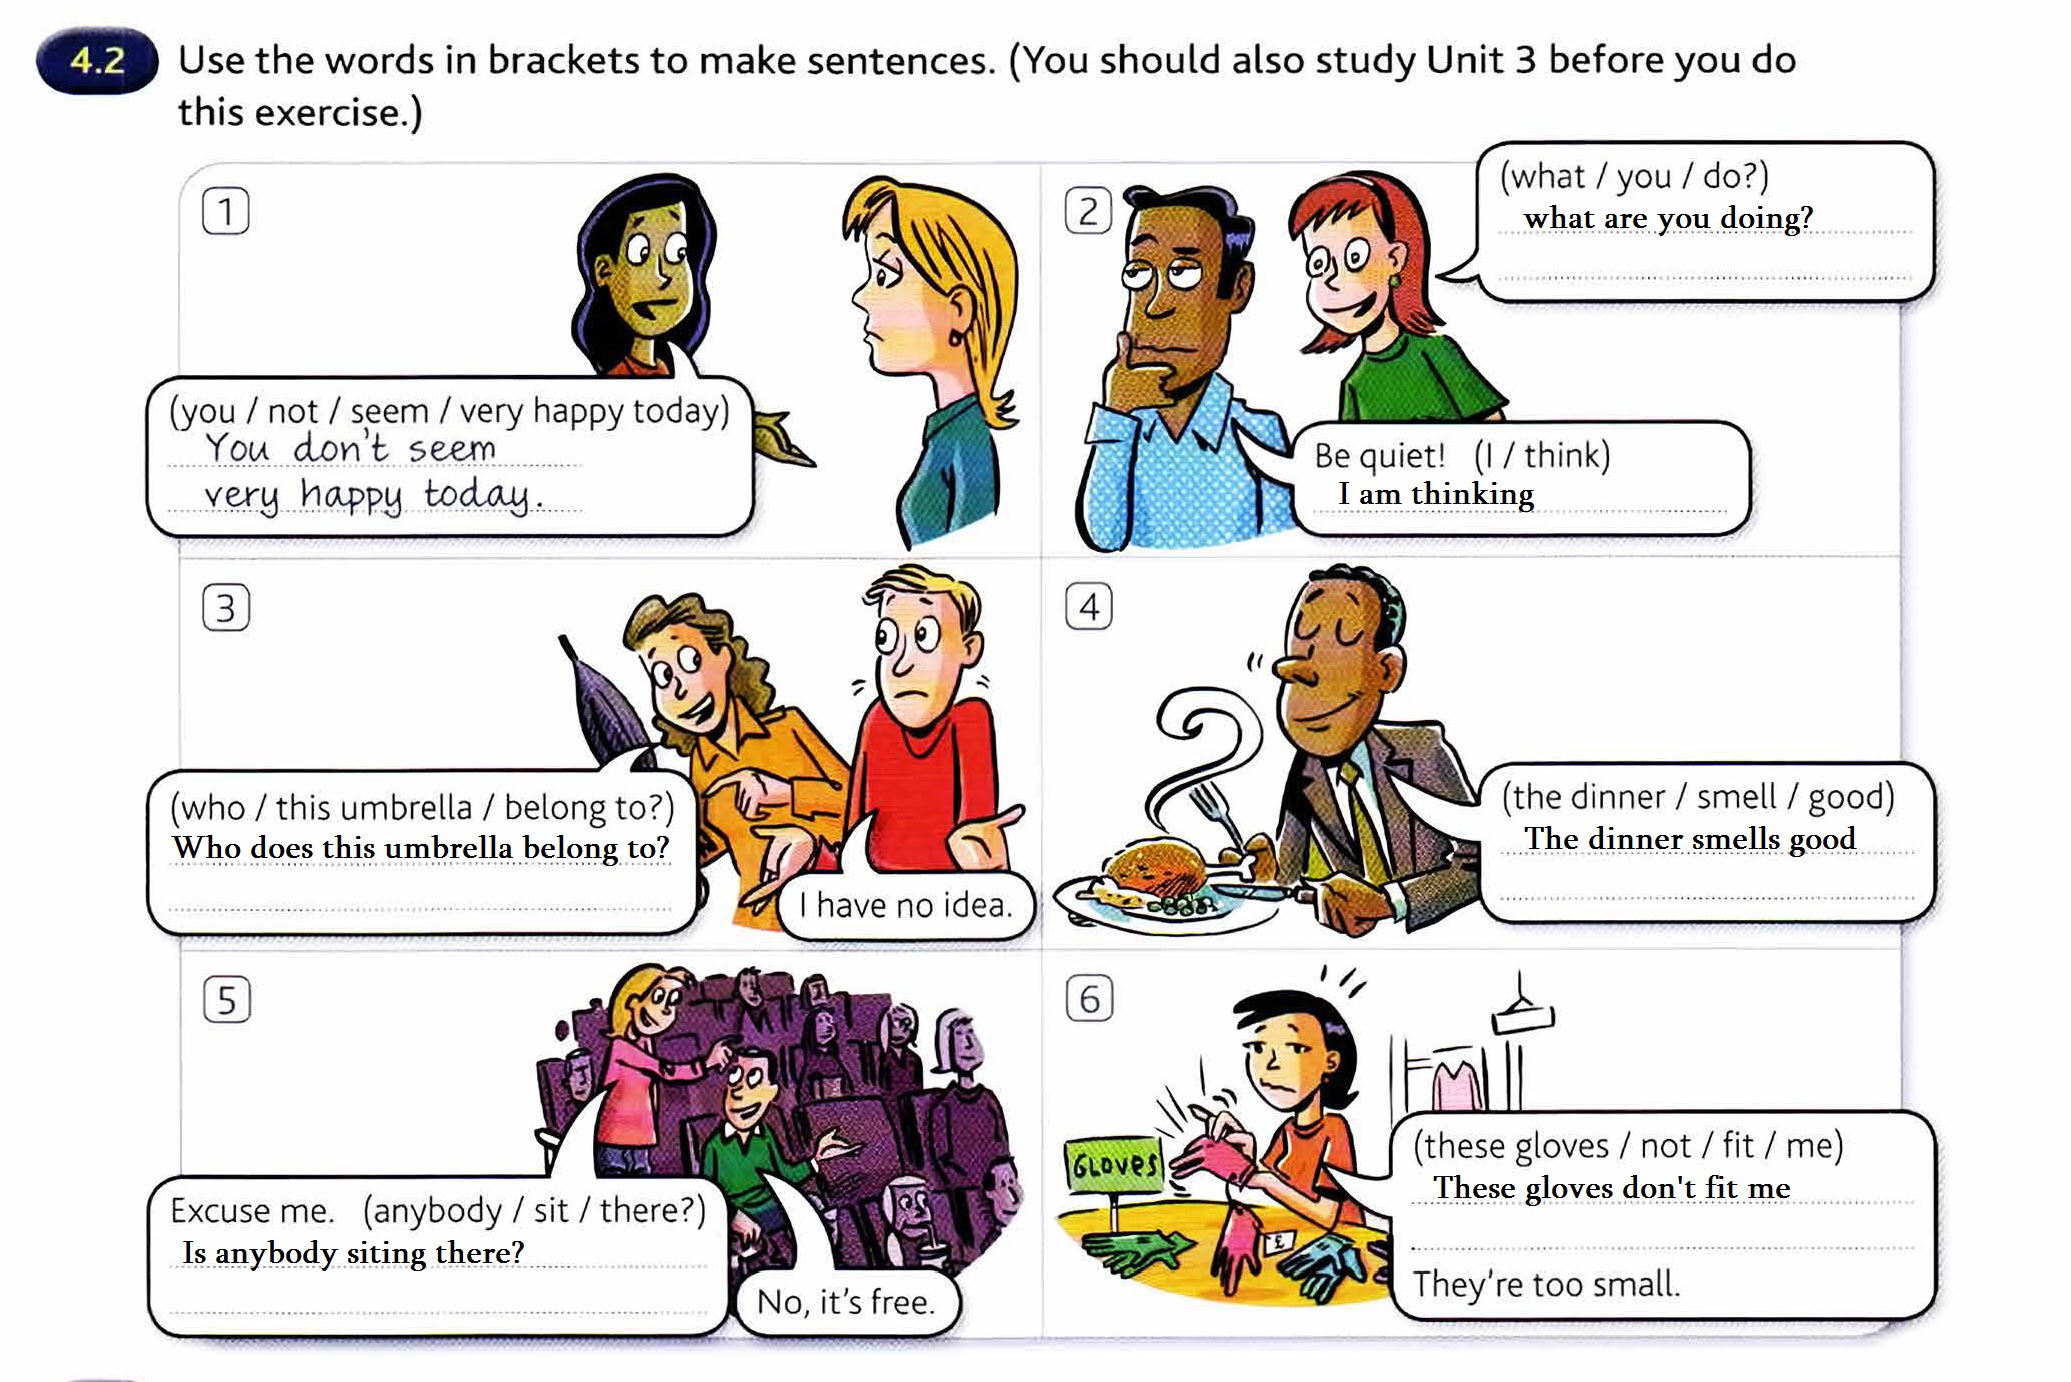 Think 1 unit 3. Смешные картинки про изучение английского языка. Комиксы для изучения английского языка. Приколы про уроки английского языка. Прикольный урок английского.